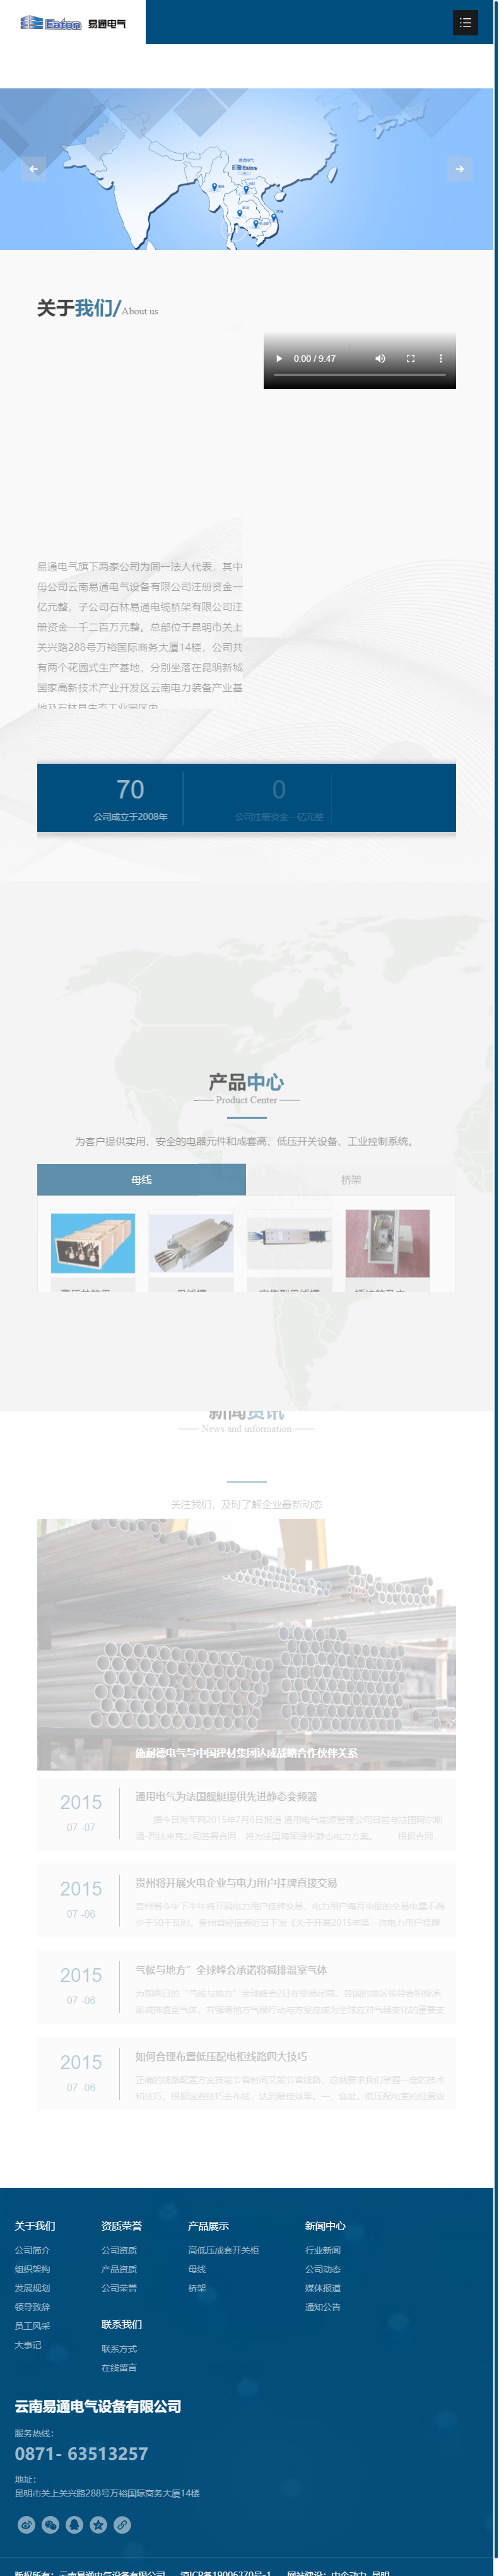 云南易通电气设备有限公司网站案例